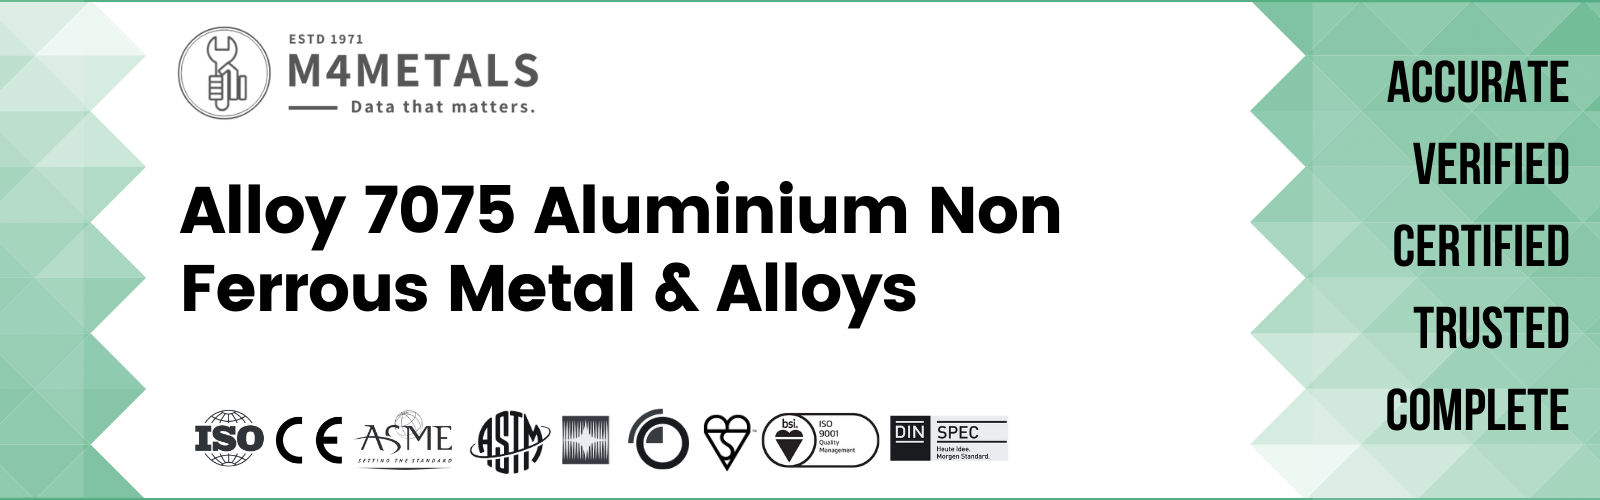 Aluminium Alloy 7075